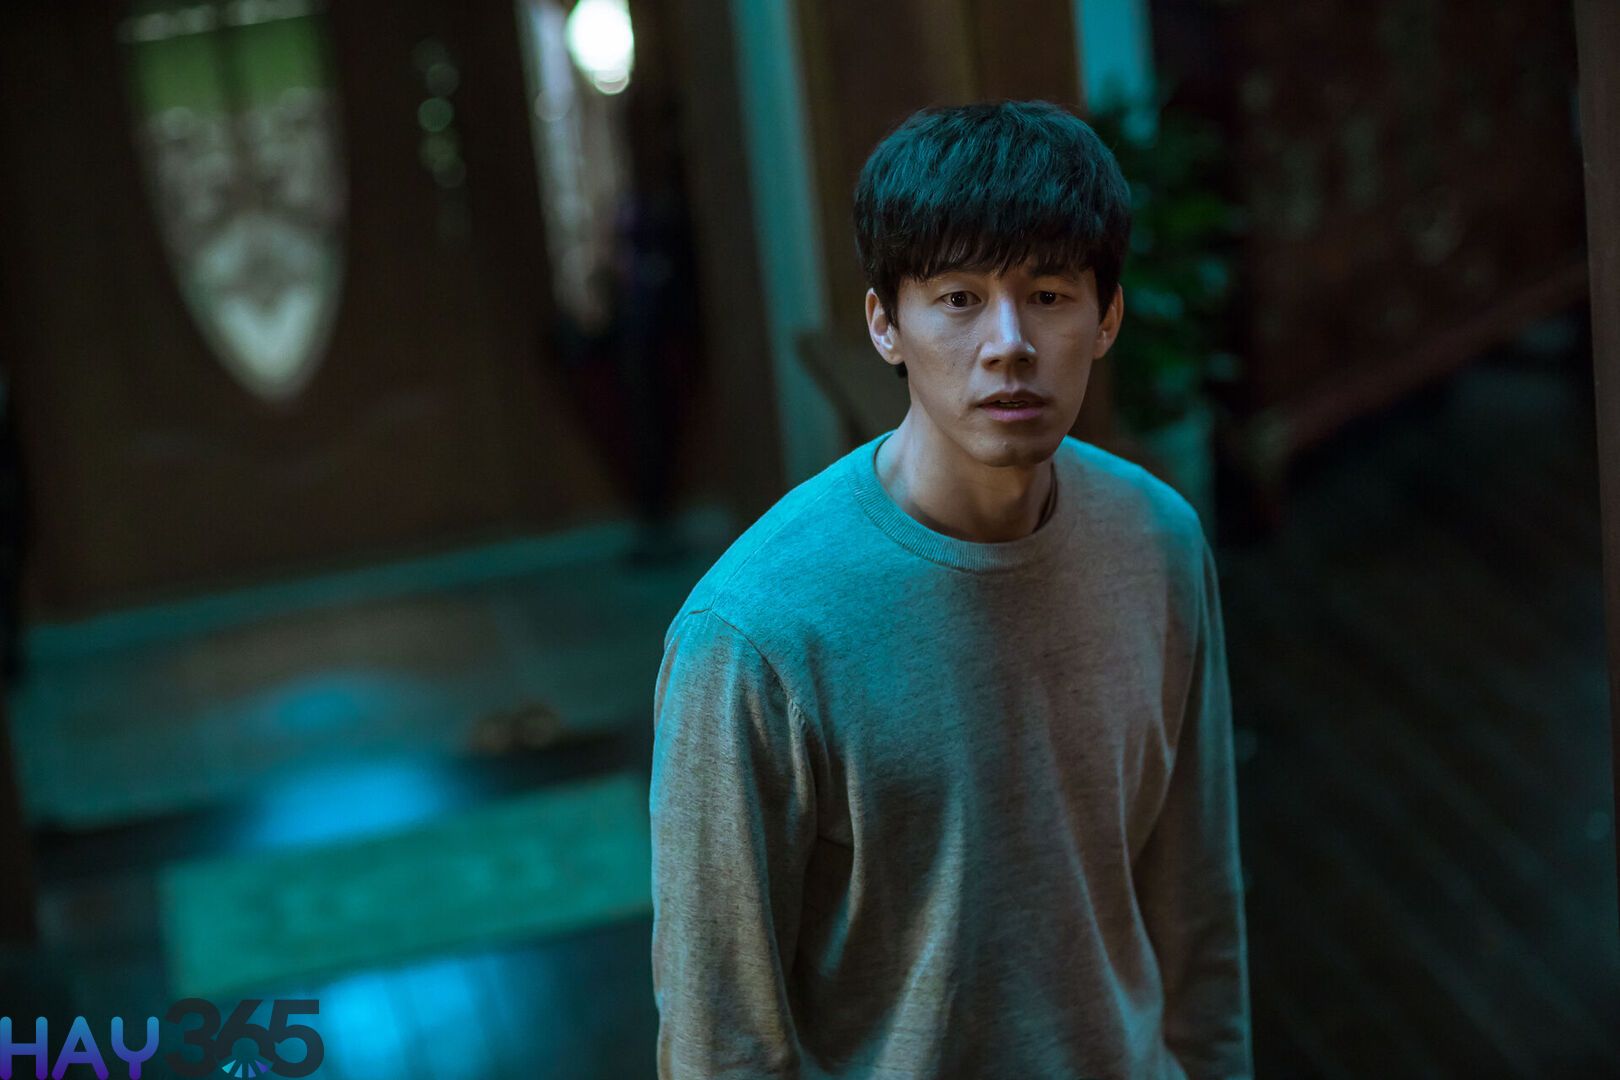 Seo Jin là người anh trai đơn độc, hoài nghi, ám ảnh vì vụ em gái mất tích 25 năm trước